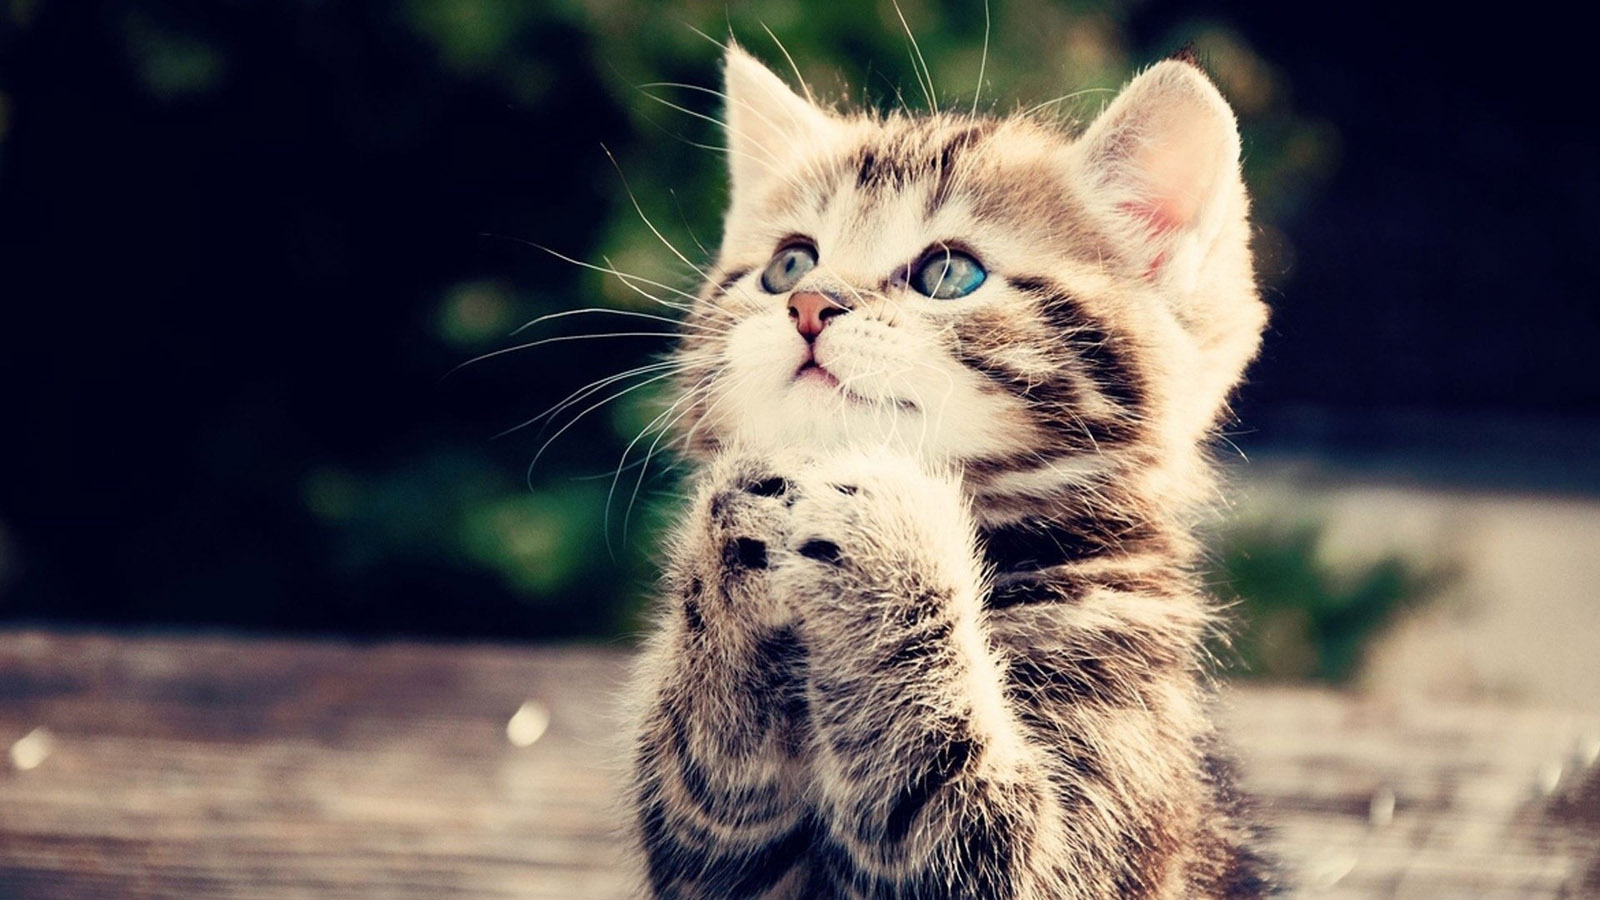 Kitten Cat Wishing Desktop Wallpaper